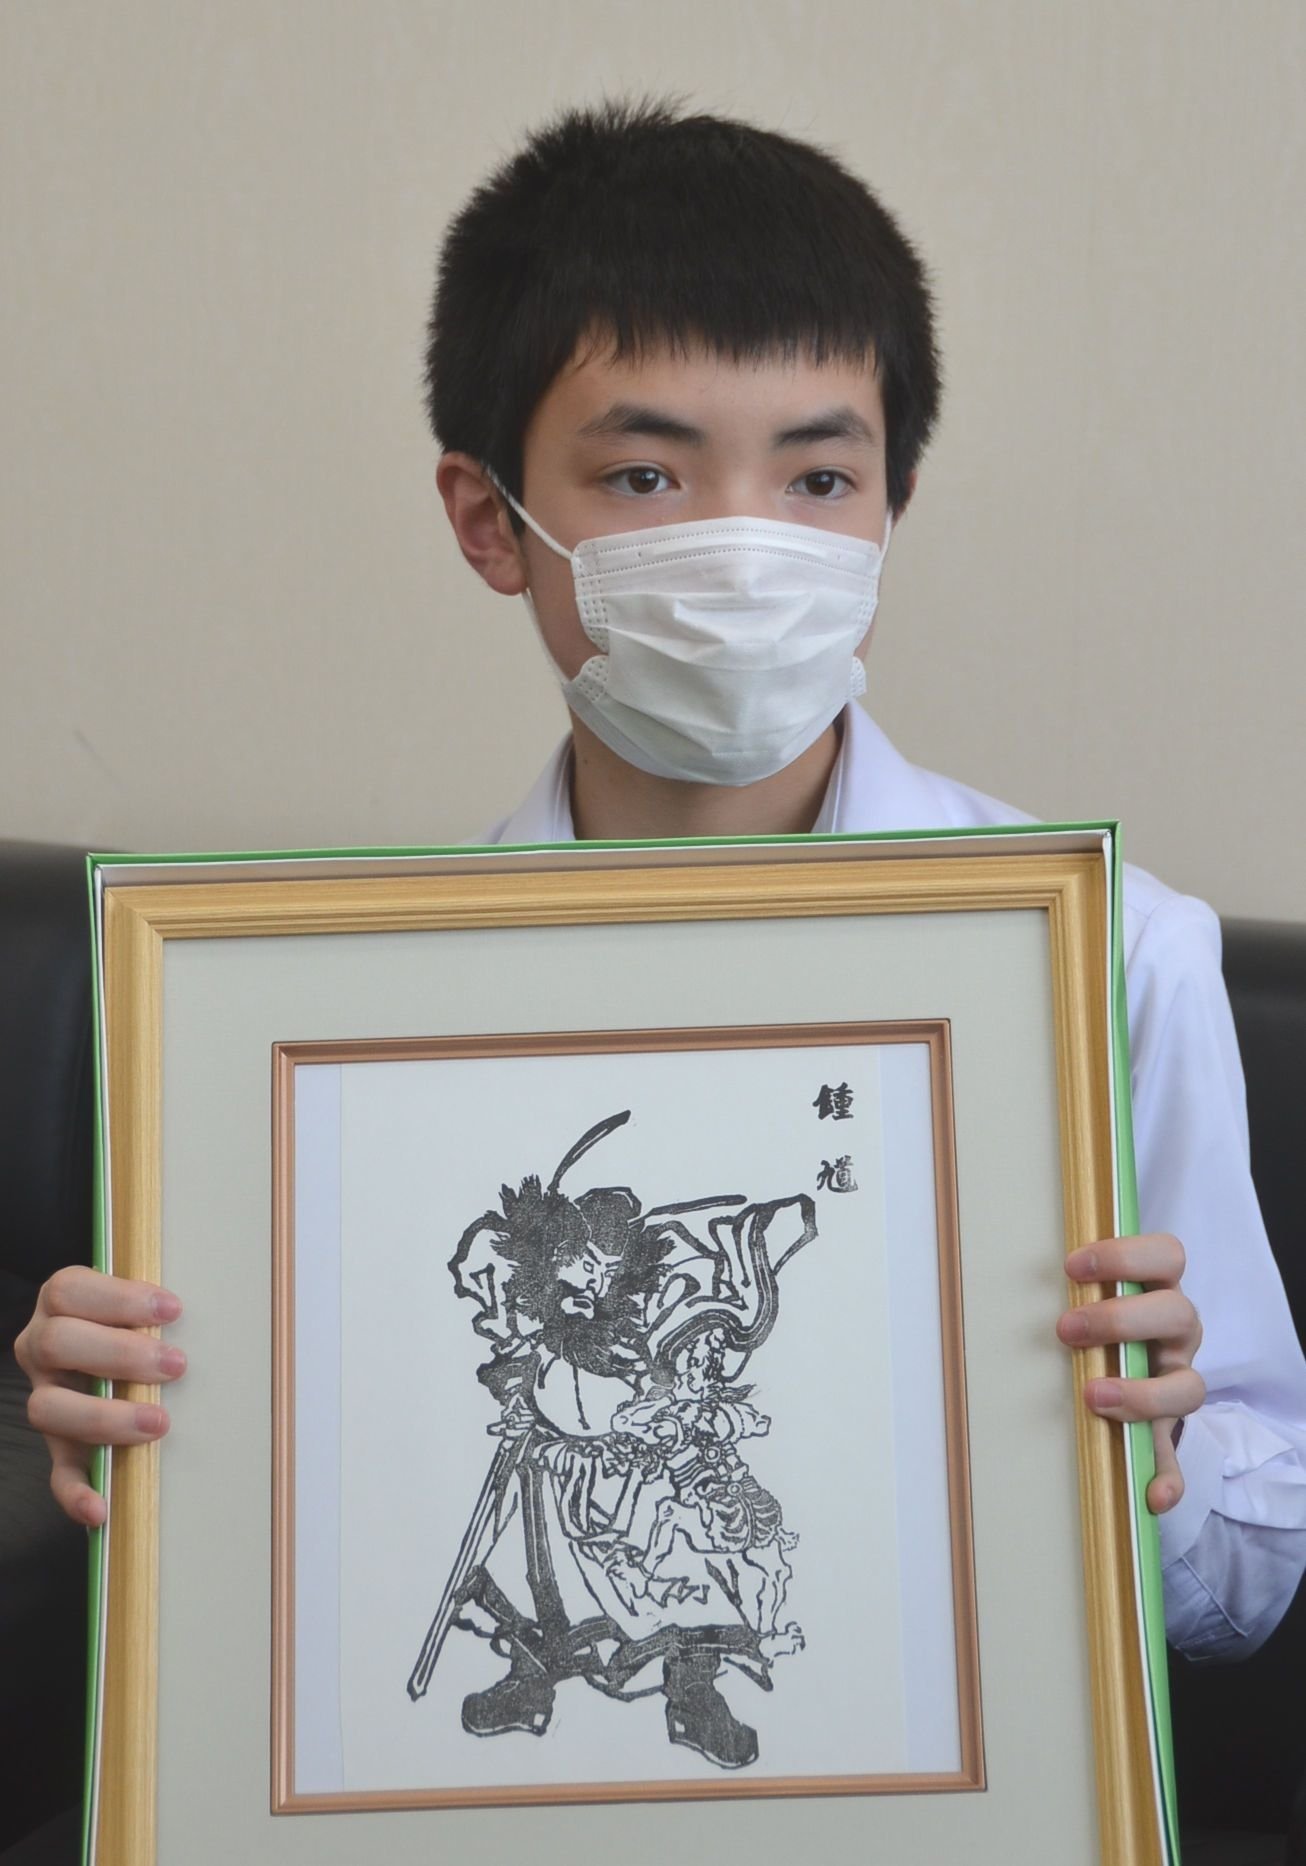 14歳版画作家、コロナ退散へ願いの「鍾馗」版画　「見た人の励ましに」